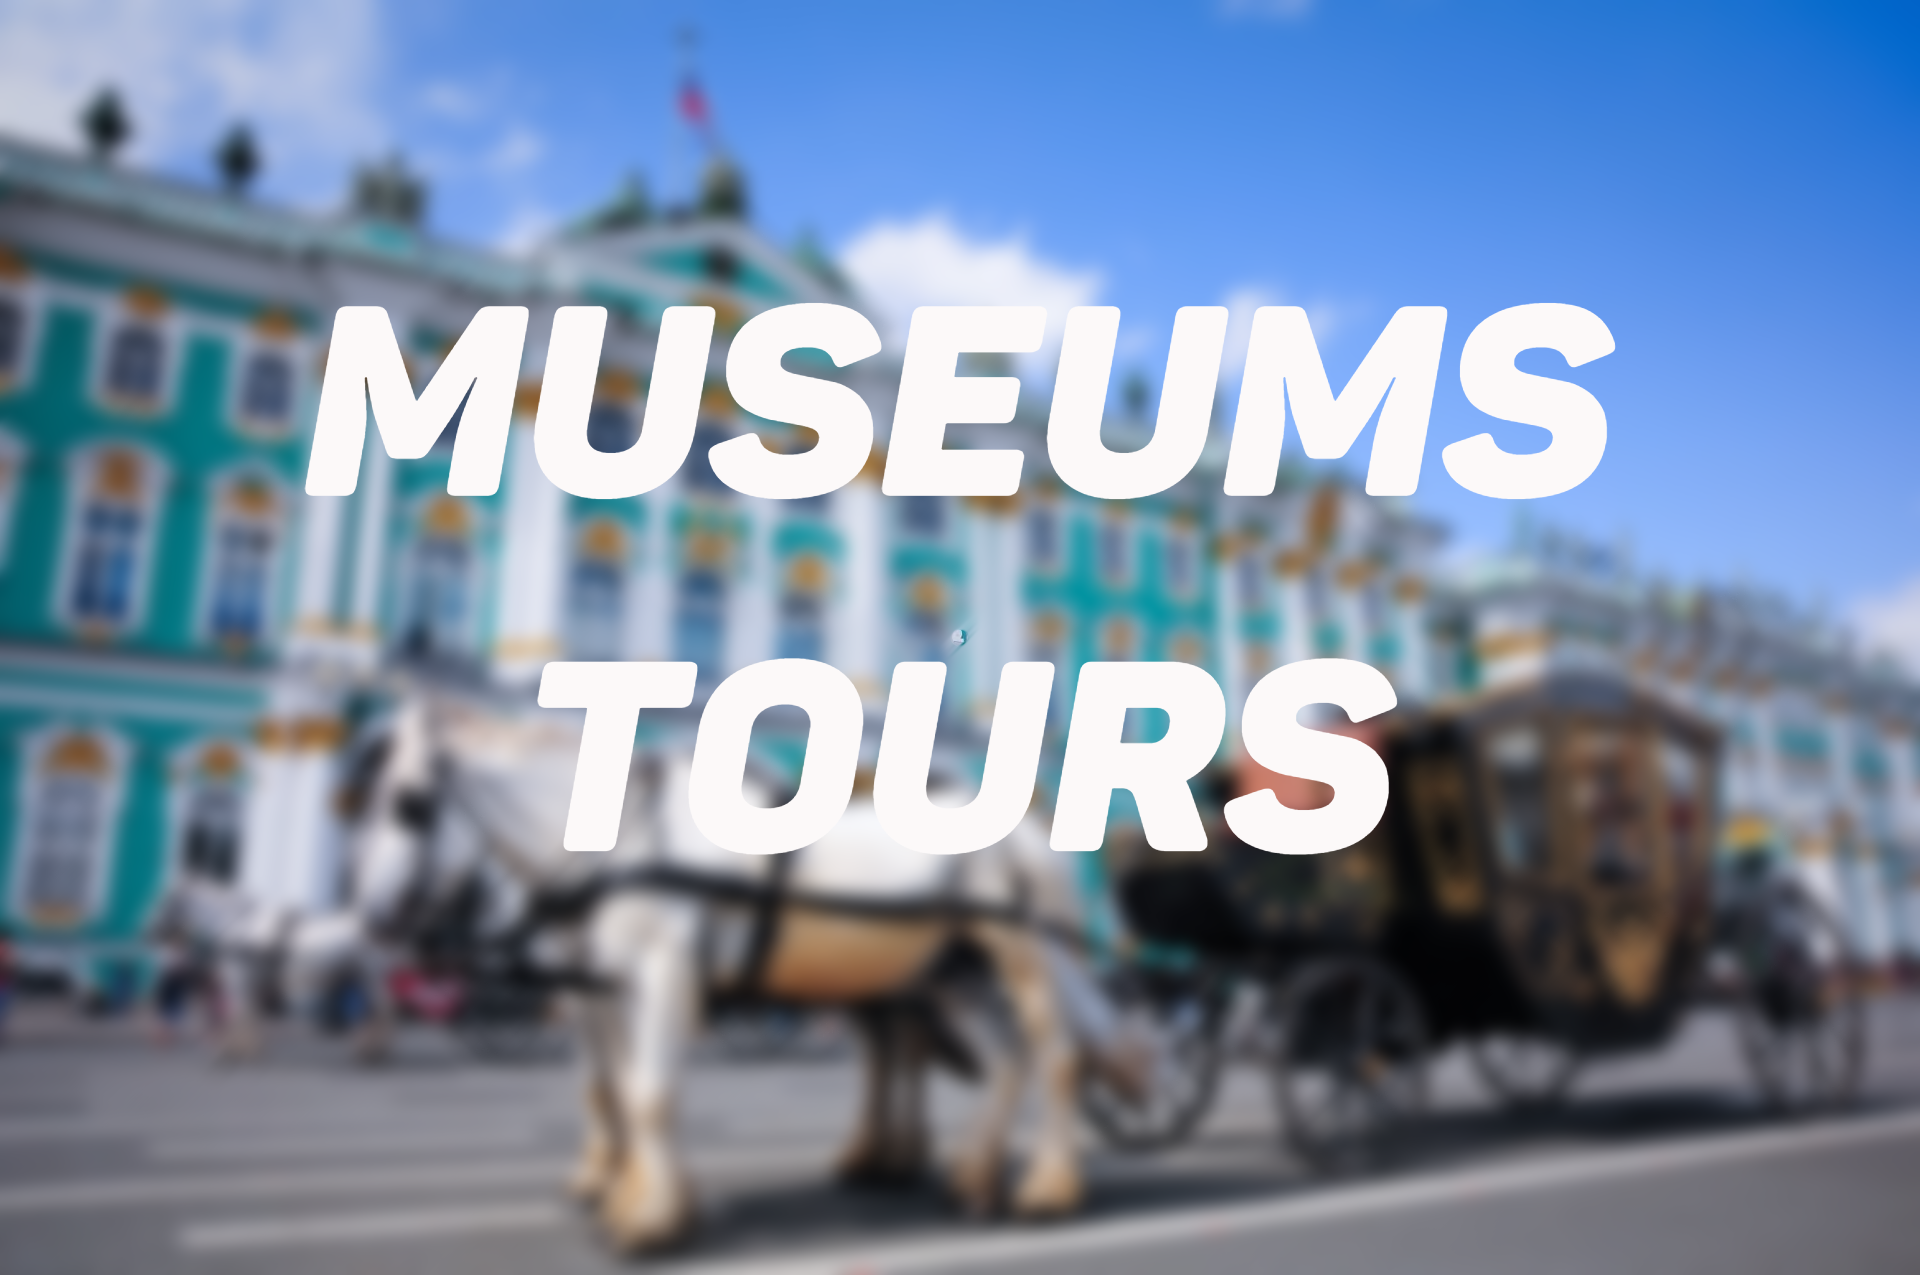 Petersburg Museums Tours